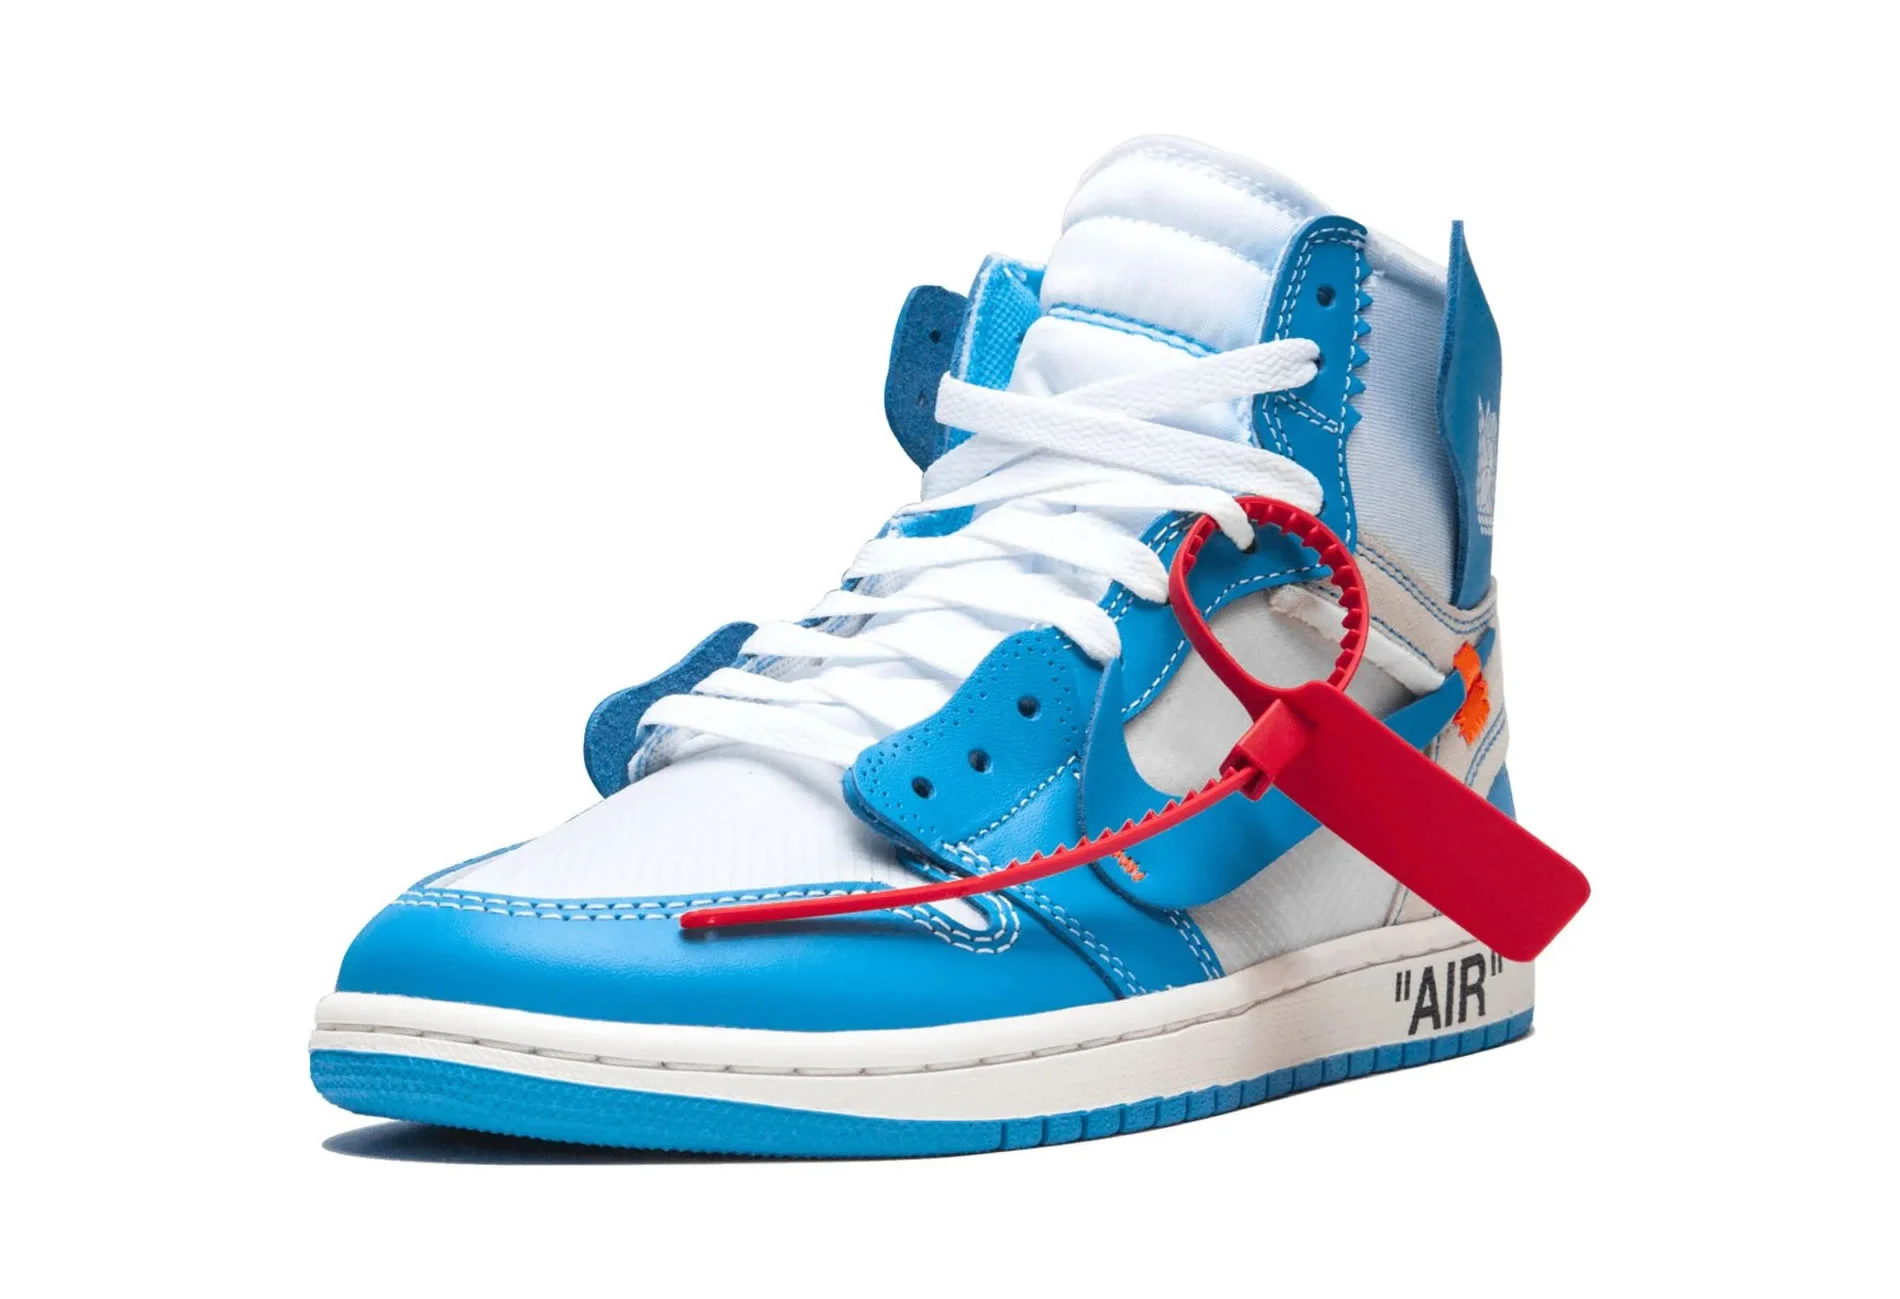 Air Jordan 1 Retro High Off White Unc Aq0818 148 Ljr Batch Sneakers (2) - www.ljrofficial.com